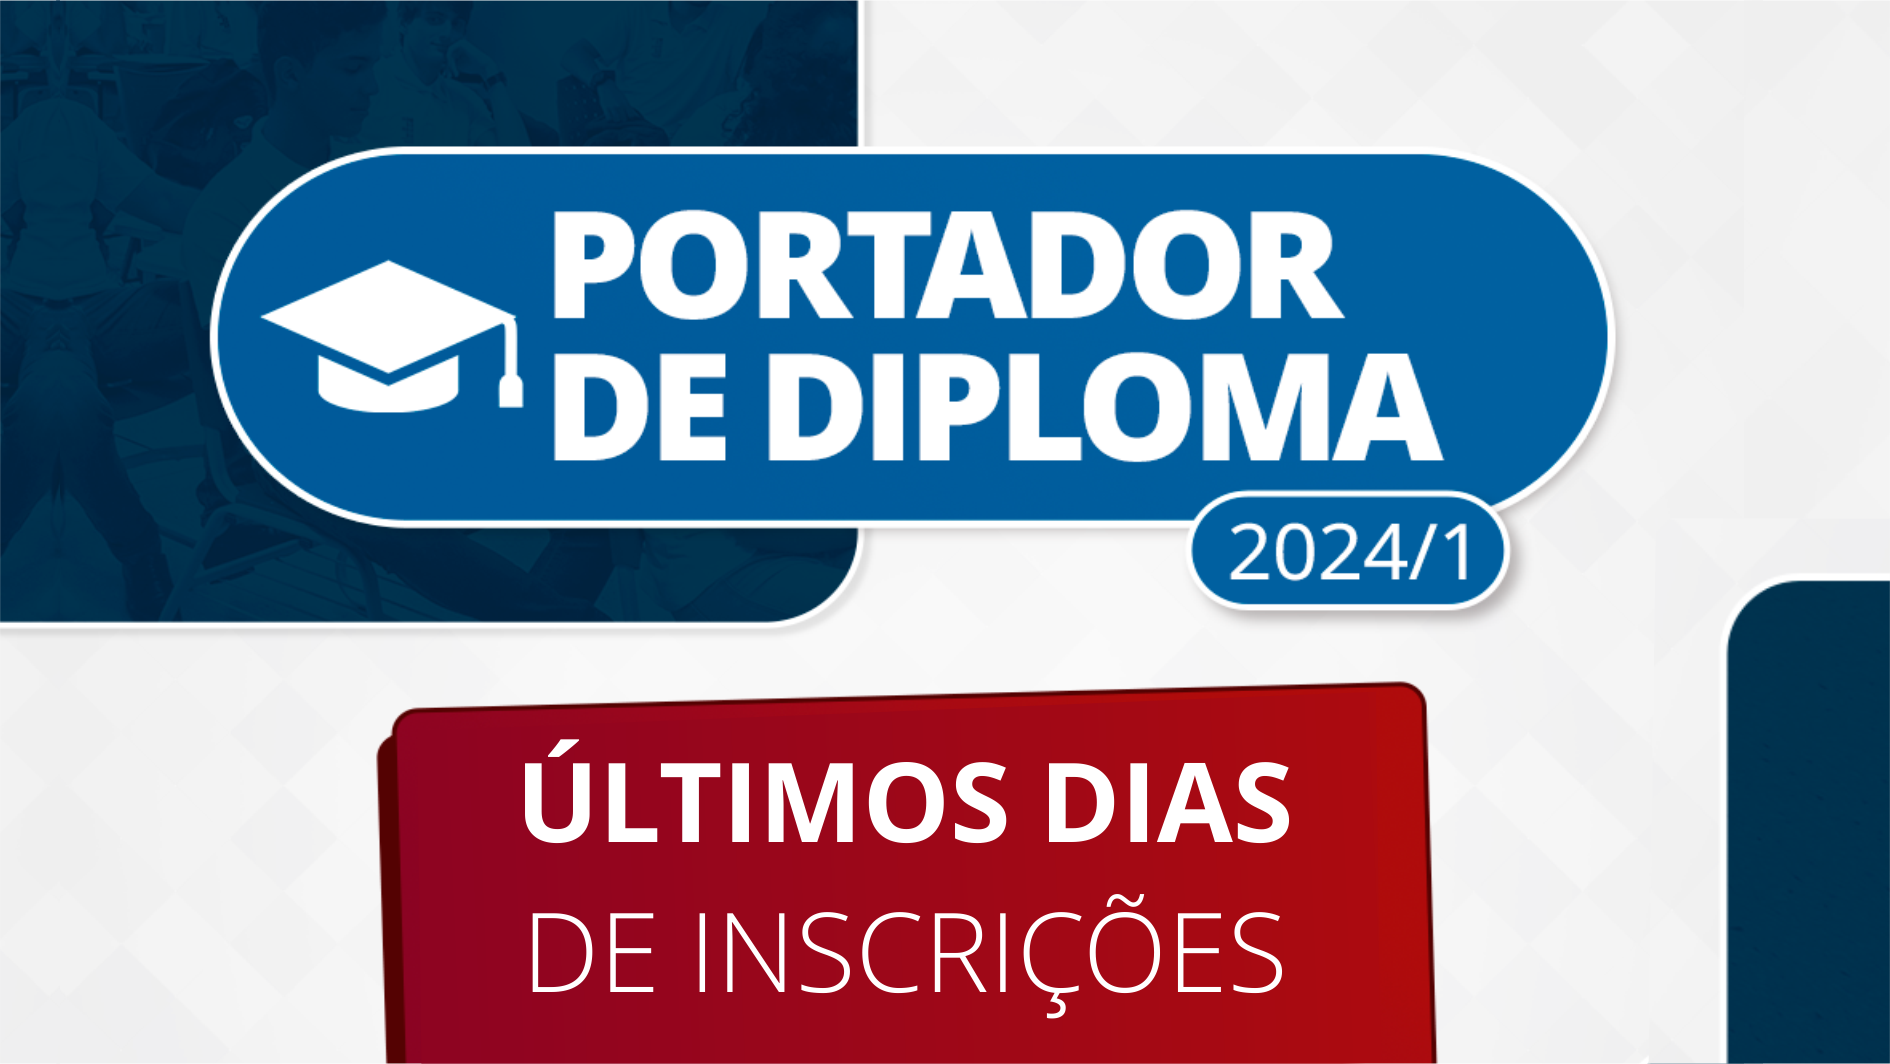 As inscrições devem ser feitas até o dia 12 de novembro pela página: ifg.edu.br/estudenoifg, na seção Portador de Diploma e Transferência Externa.